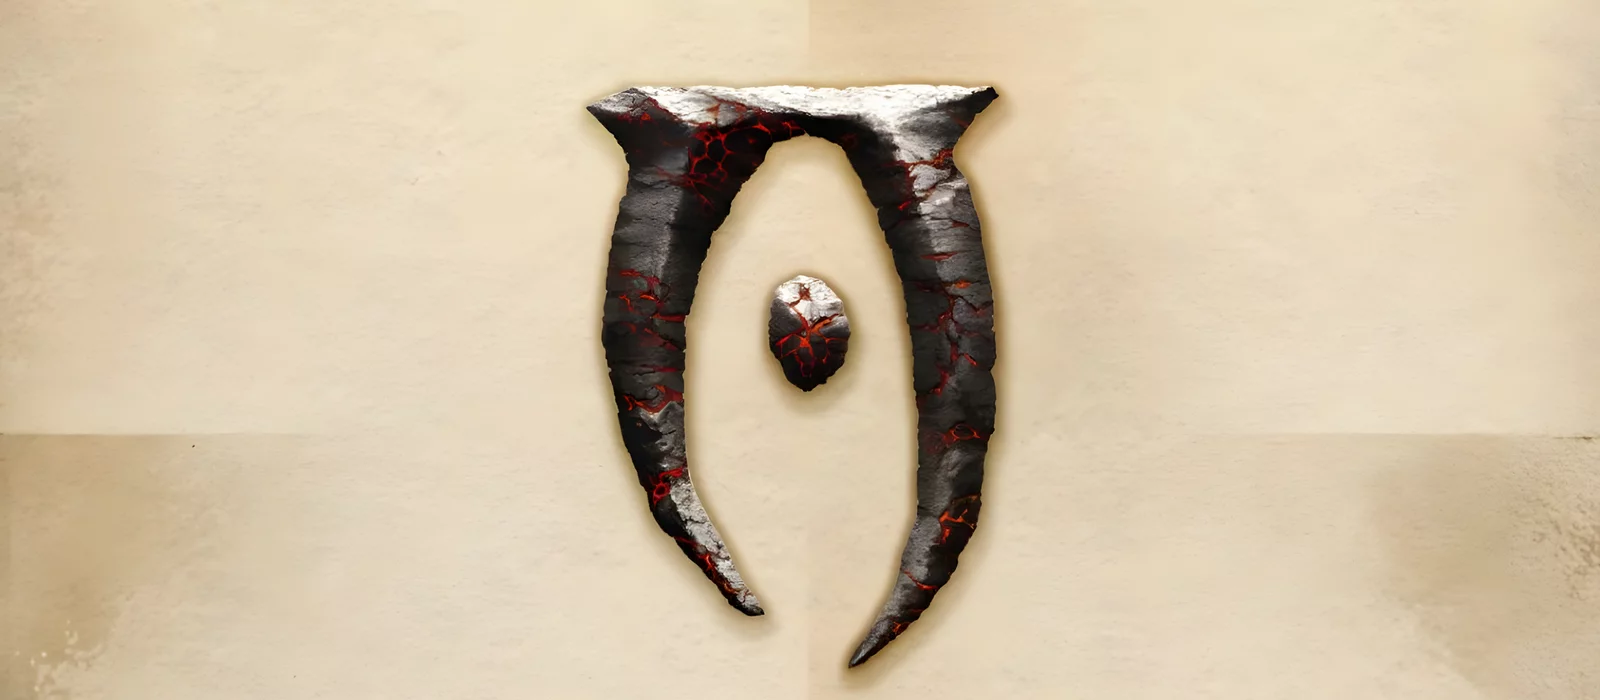 Разработчик рассказал об официальном ремастере или ремейке The Elder Scrolls 4: Oblivion. Детали и возможная дата выхода